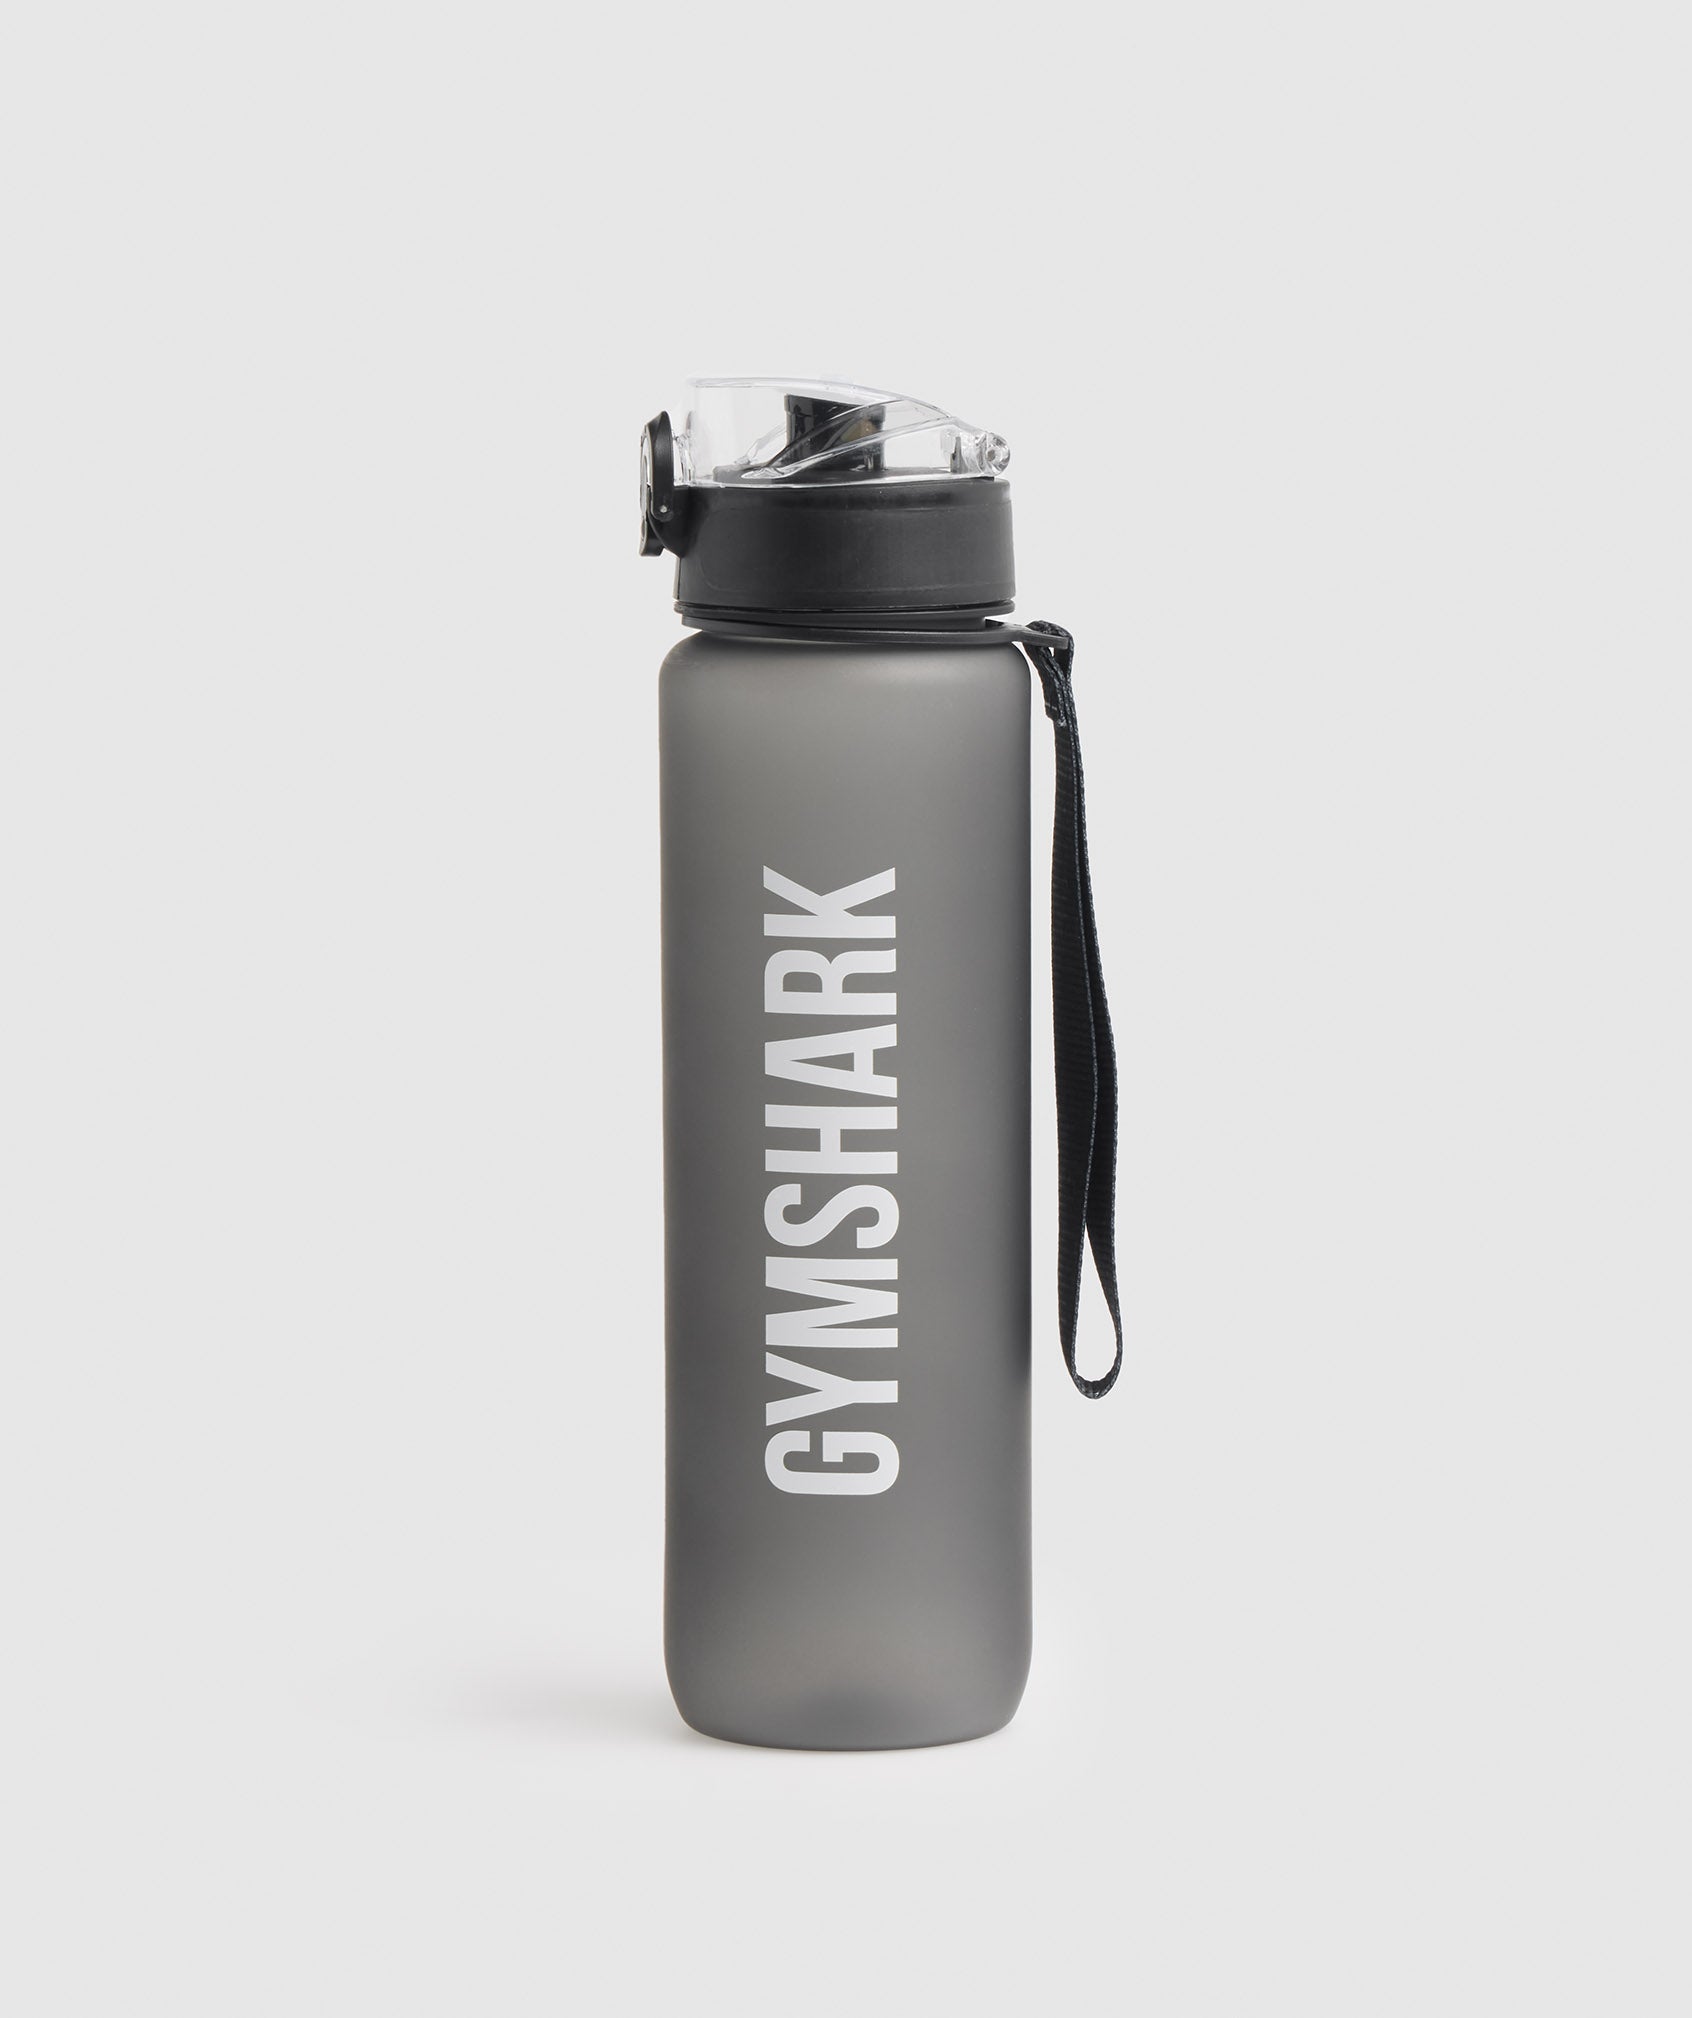 Gymshark Metal Shaker - Steel Grey